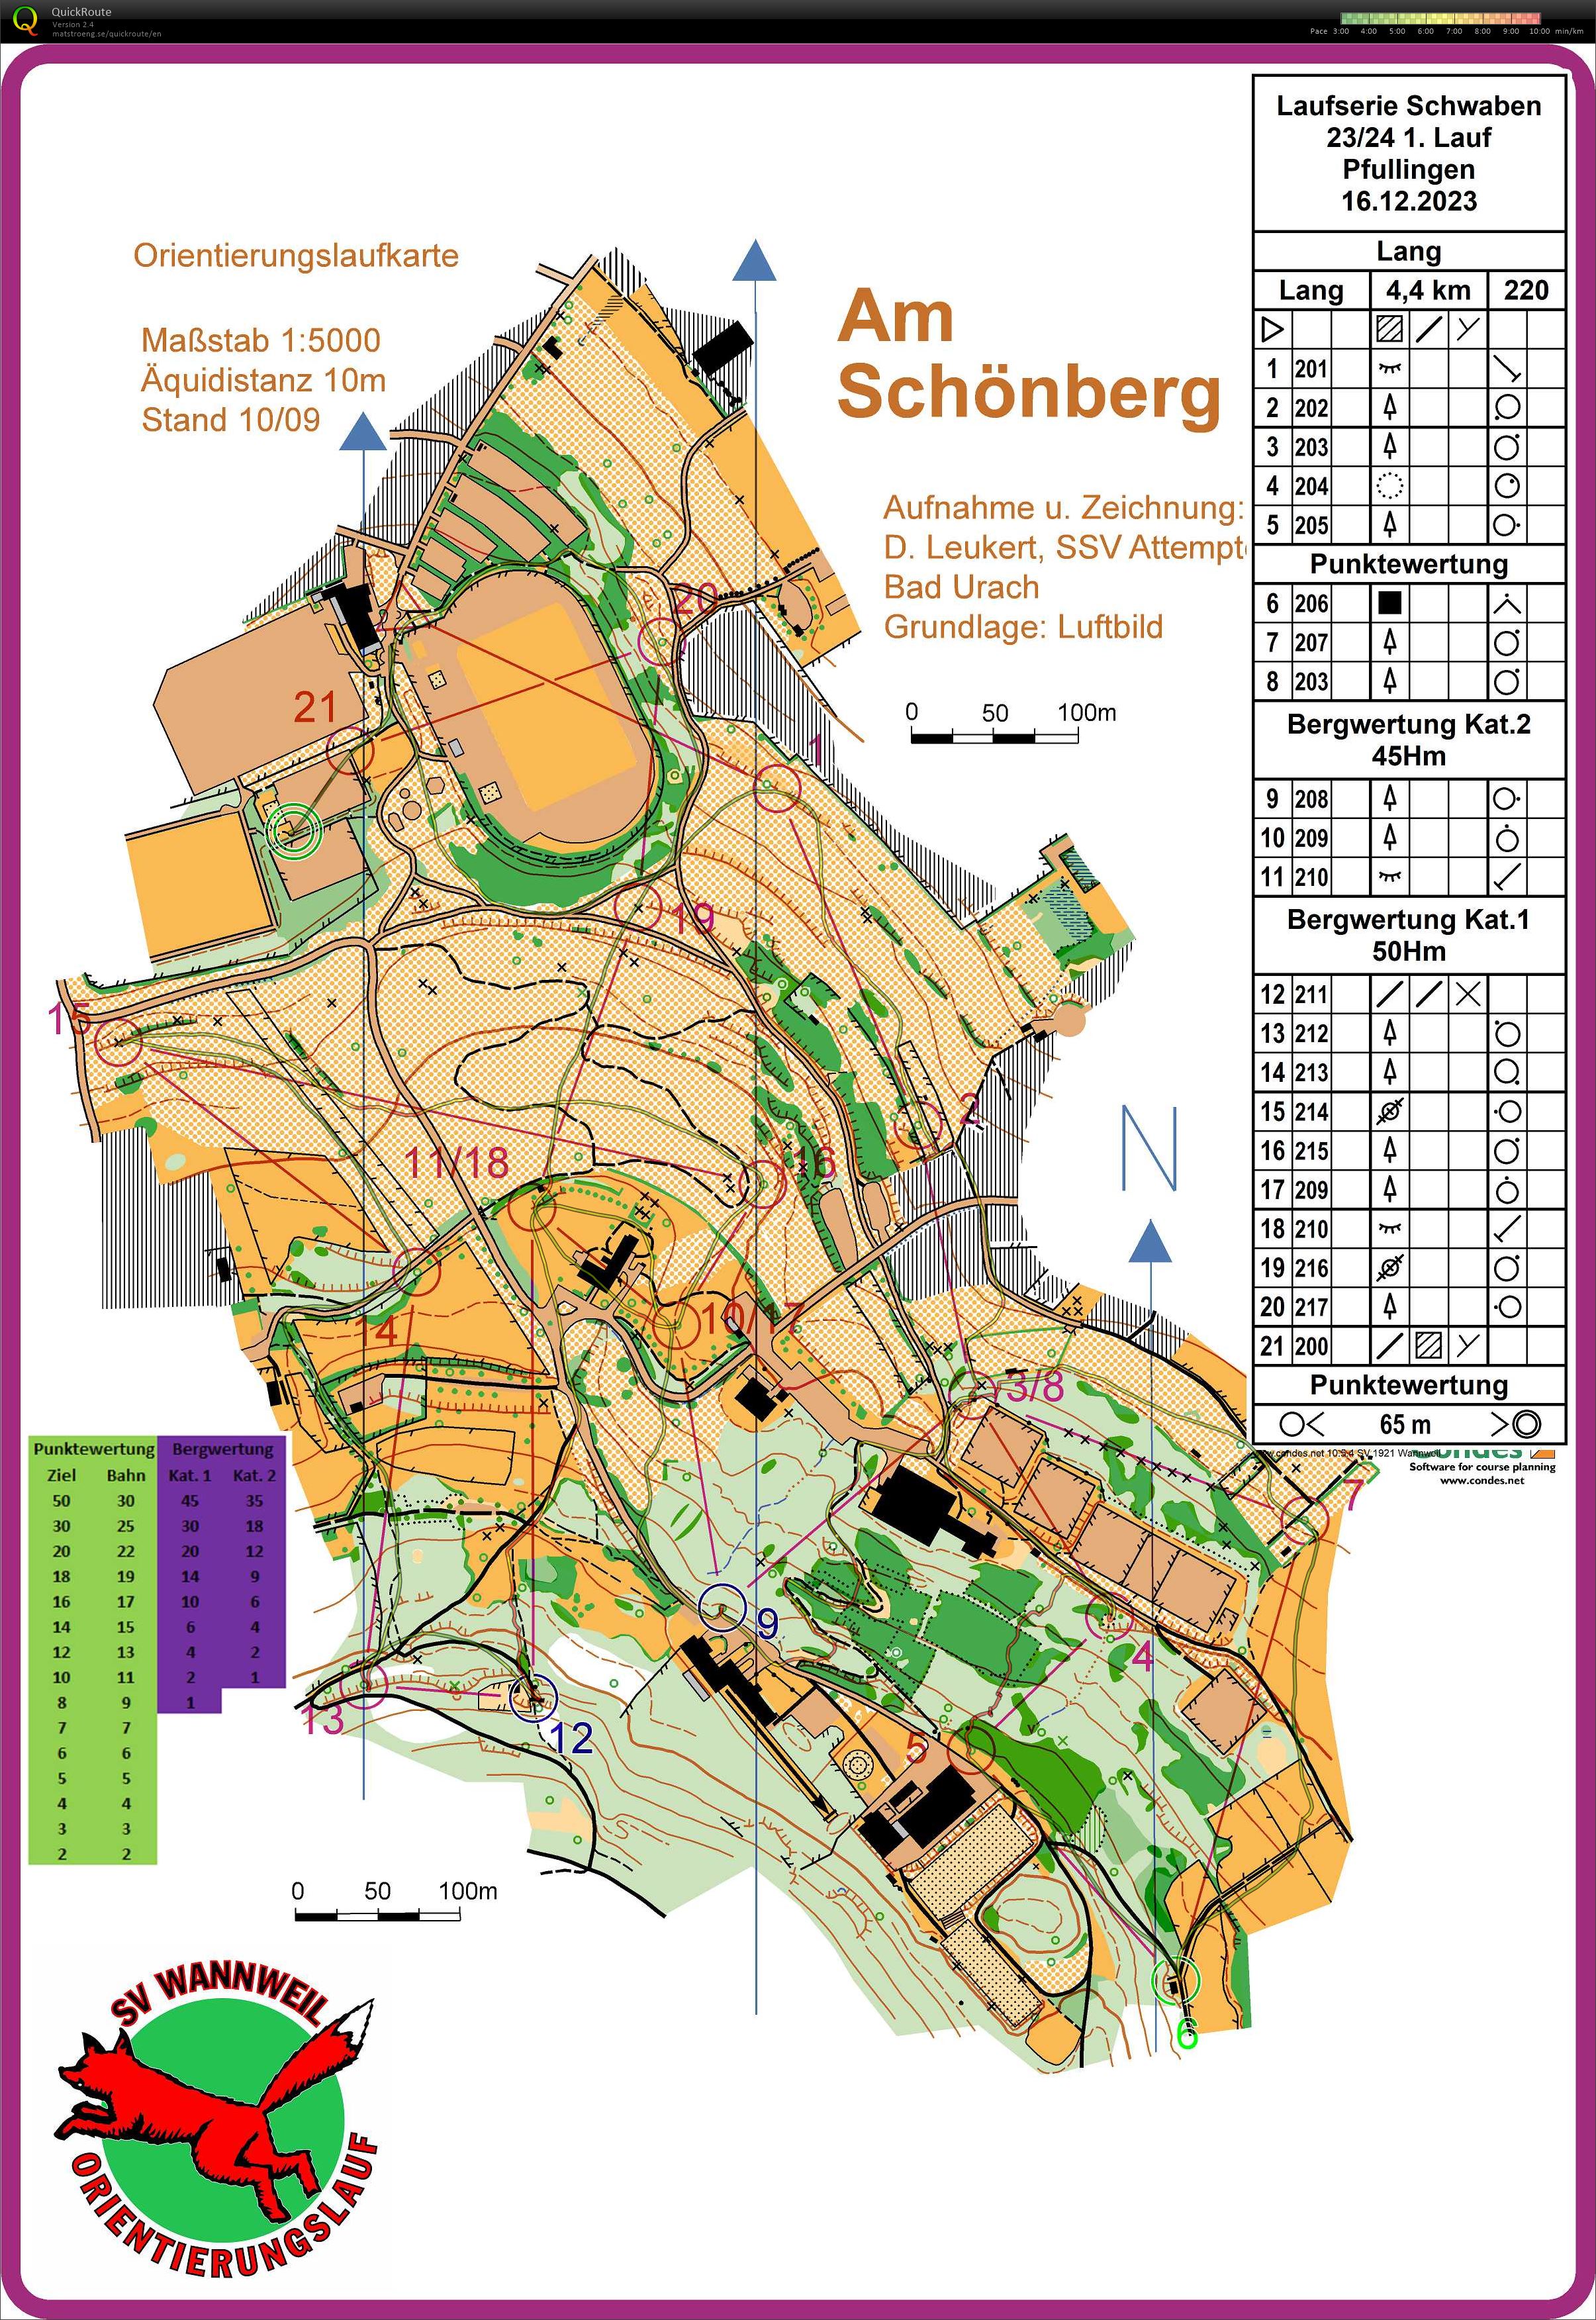 Laufserie Schwaben 23/24 1. Round Pfullingen (16.12.2023)